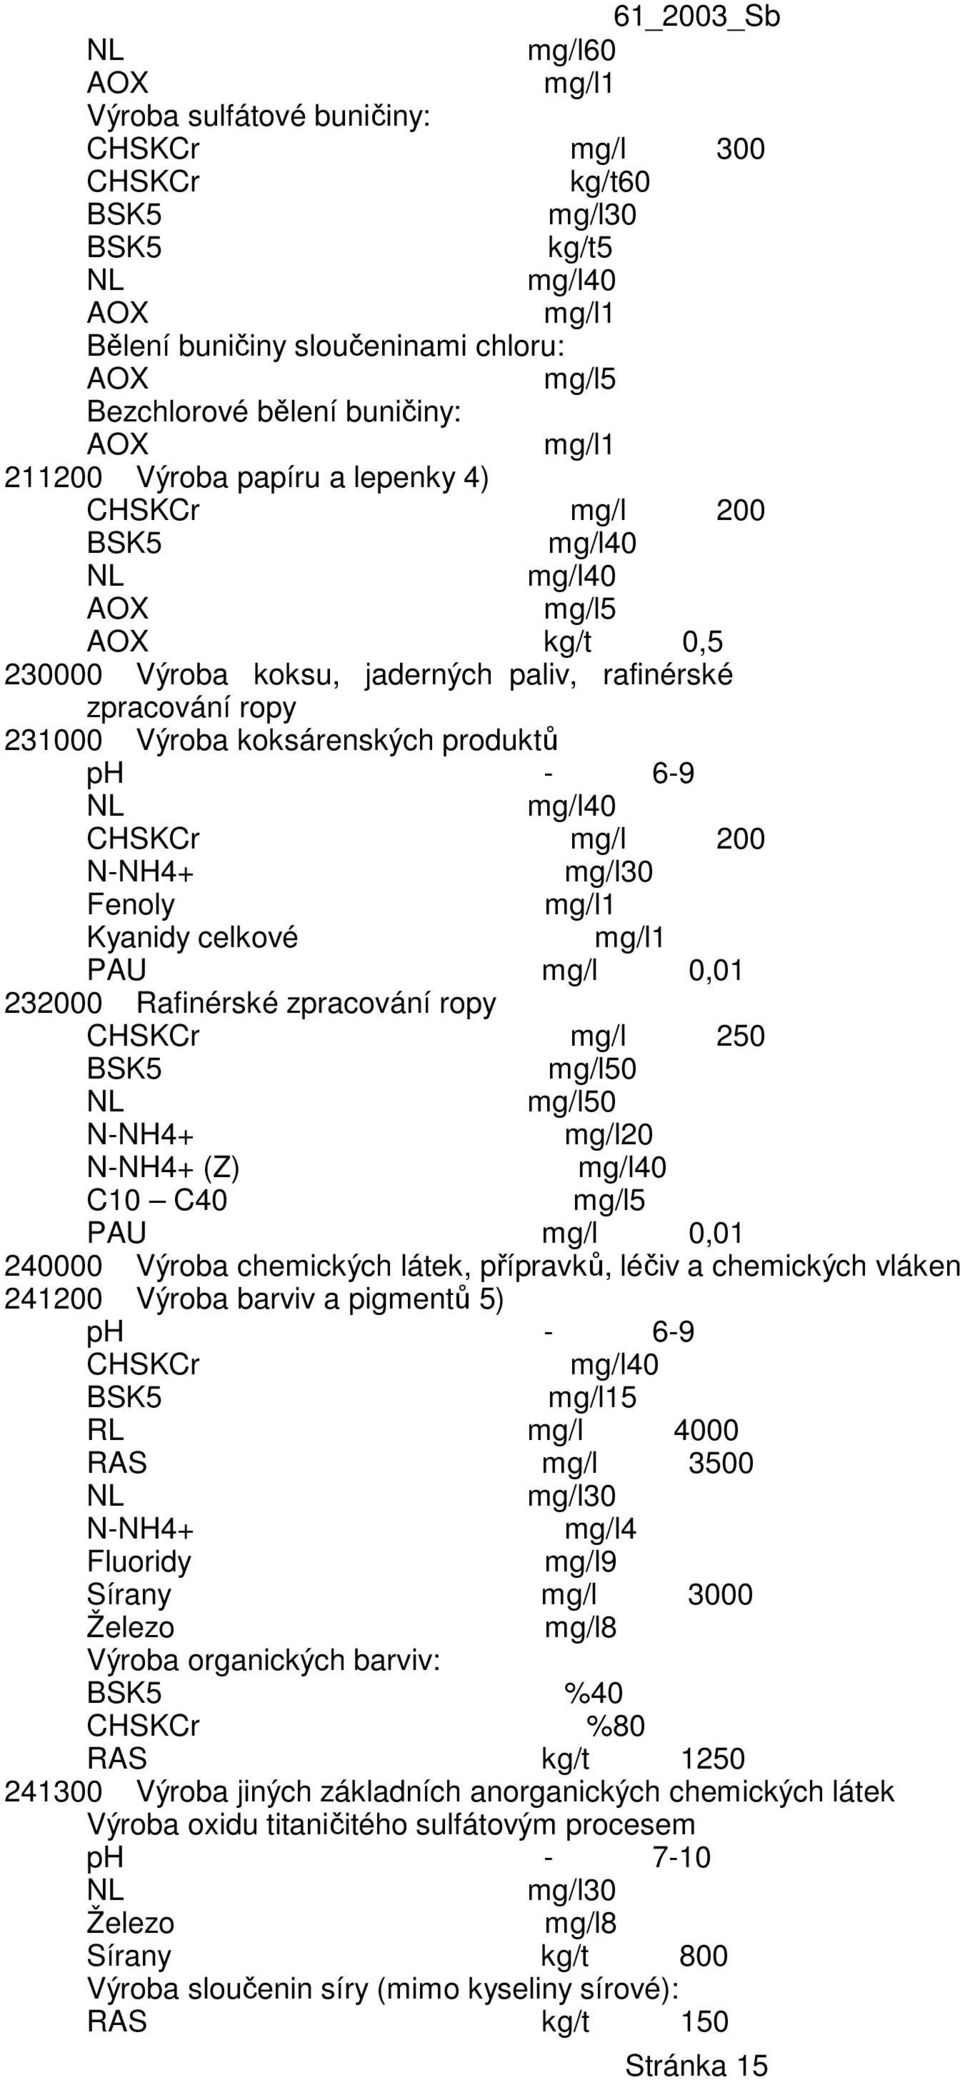 Fenoly mg/l1 Kyanidy celkové mg/l1 PAU mg/l 0,01 232000 Rafinérské zpracování ropy CHSKCr mg/l 250 mg/l50 mg/l50 N-NH4+ 0 N-NH4+ (Z) C10 C40 mg/l5 PAU mg/l 0,01 240000 Výroba chemických látek,